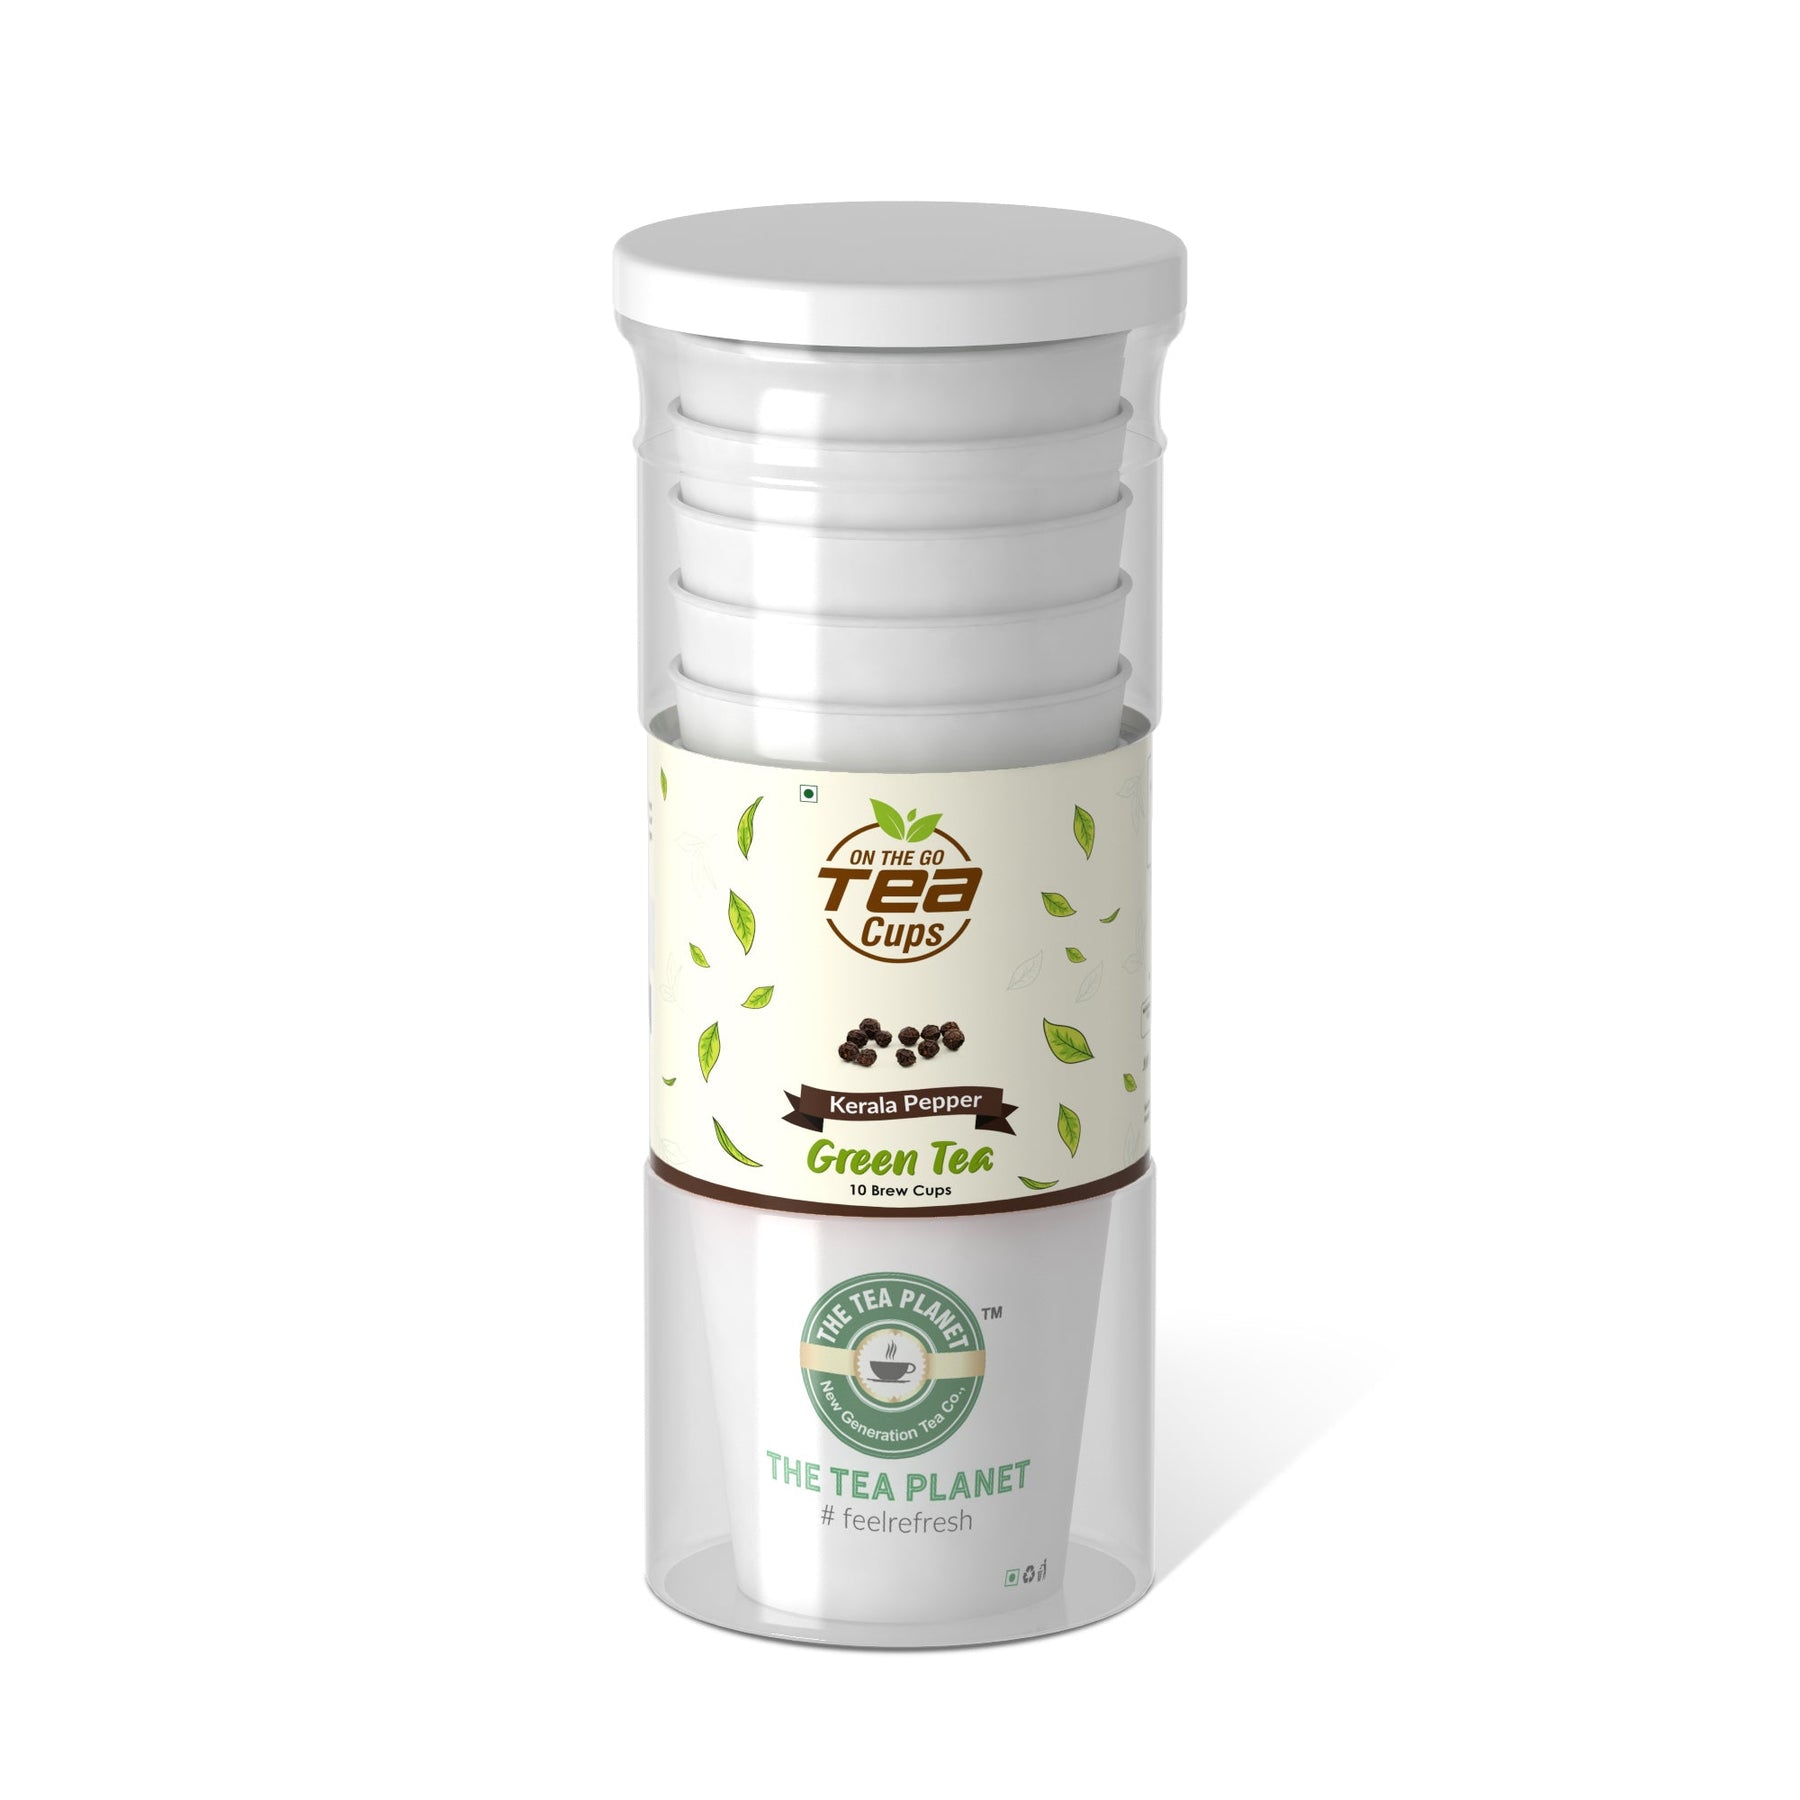 Kerala Pepper Instant Green Tea Brew Cup - 10 cups